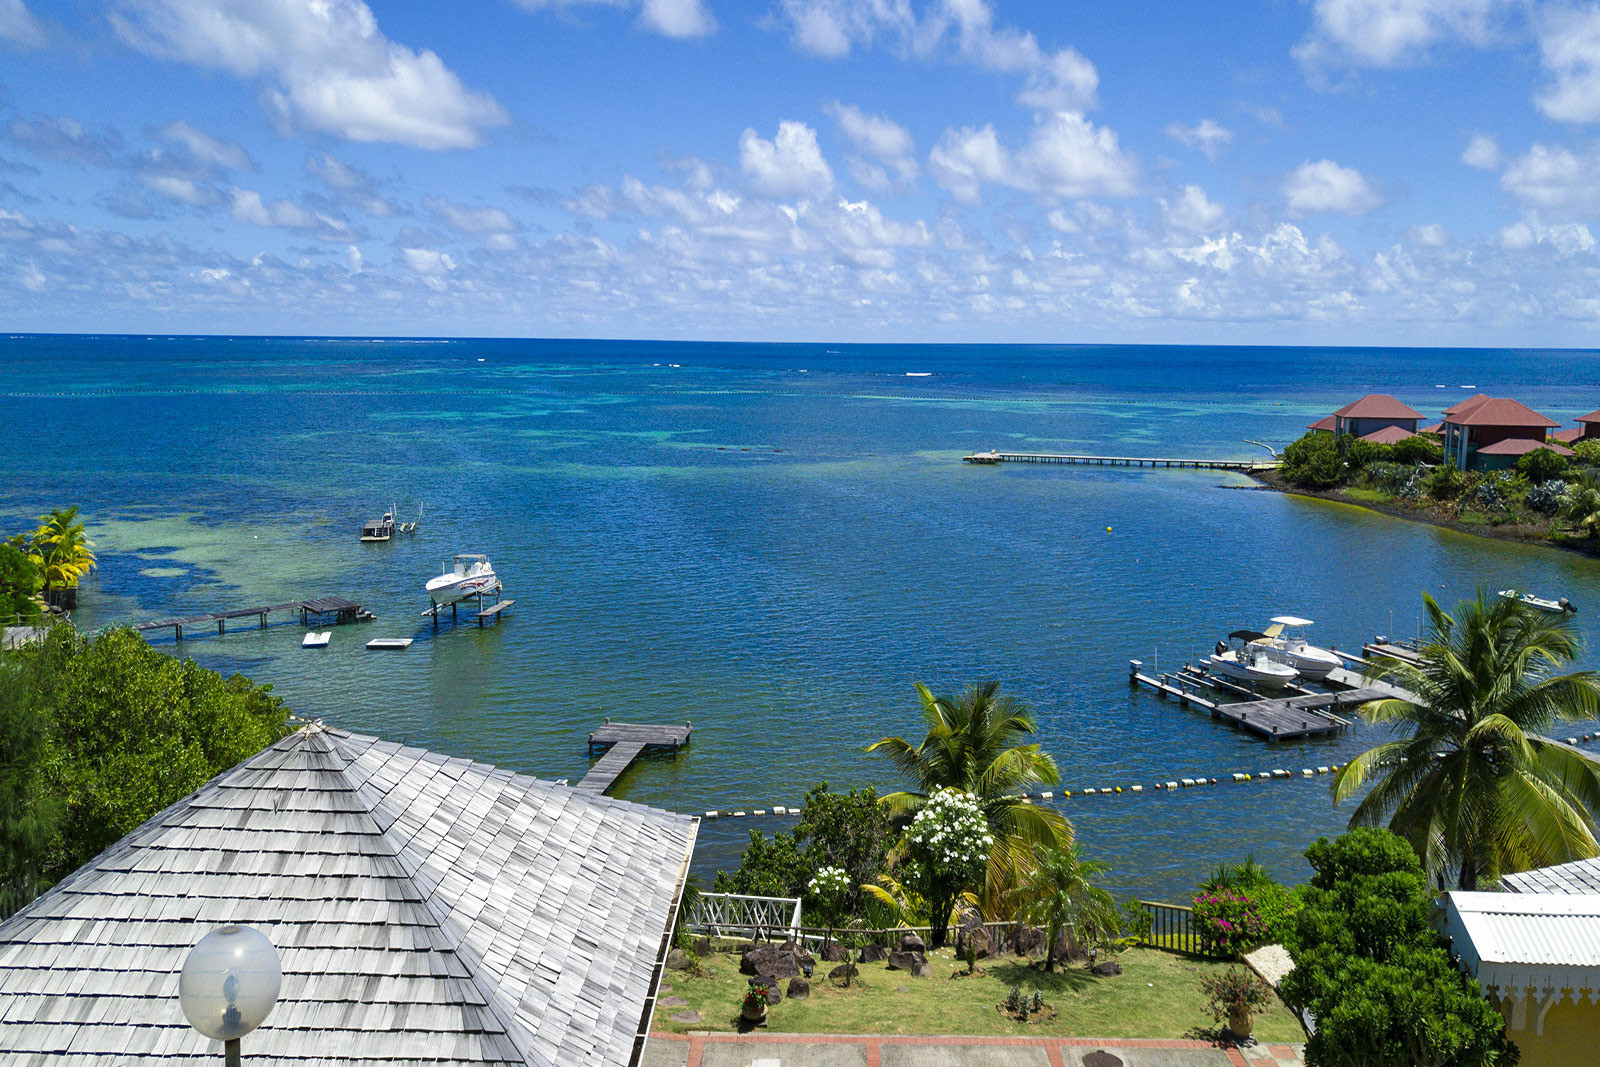 CAP SOLEIL et MER location Villa de luxe Martinique le Cap Est ponton - La superbe vue sur la mer turquoise